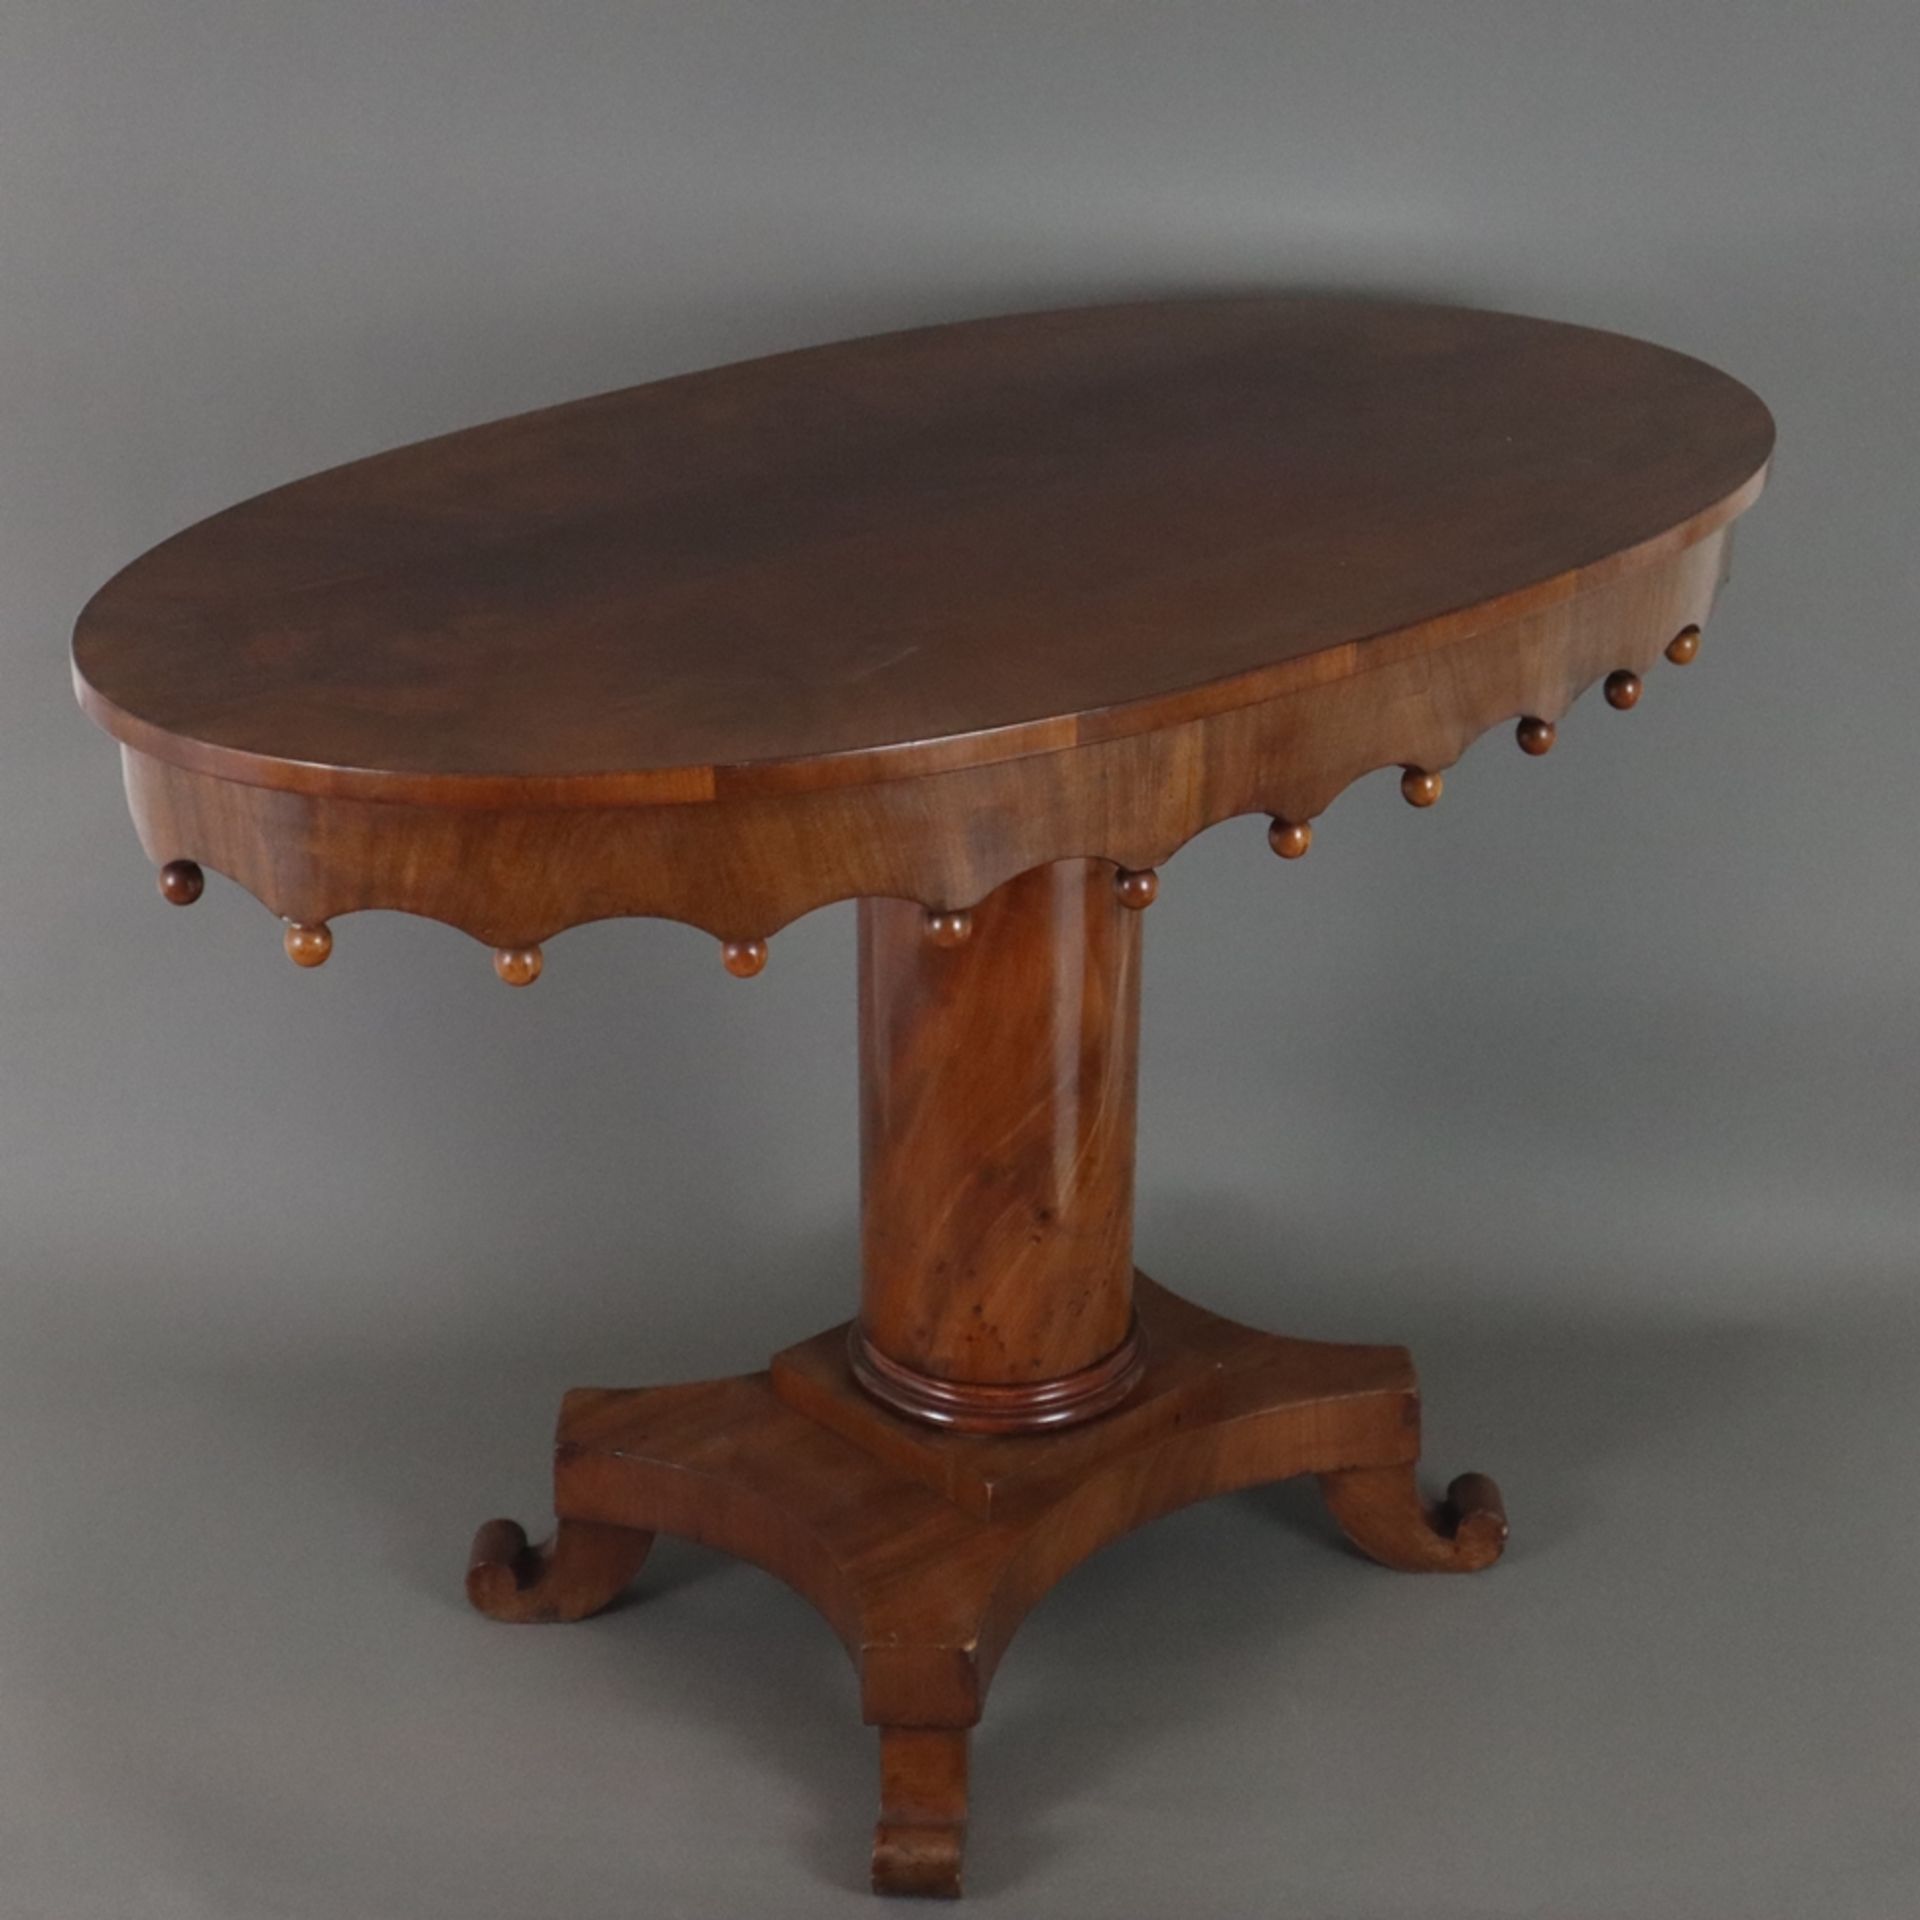 Ovaler Salontisch - um 1850, Mahagoni-Furnier, ovale Tischplatte, ausgeschnittene Zarge mit vollrun